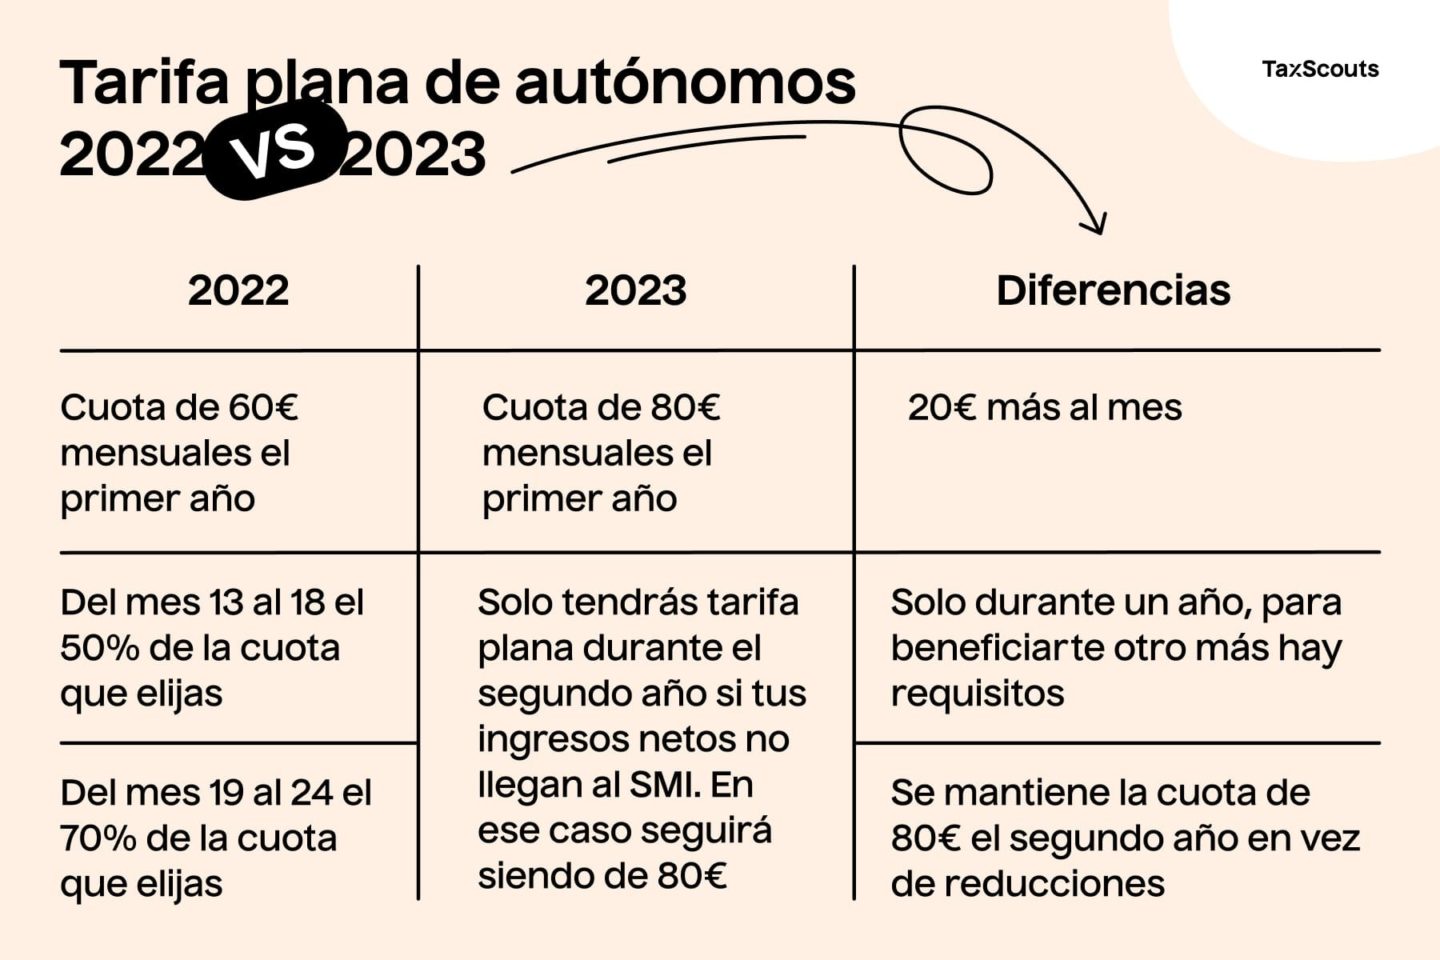 Diferencias entre la tarifa plana de autónomos en 2022 y 2023